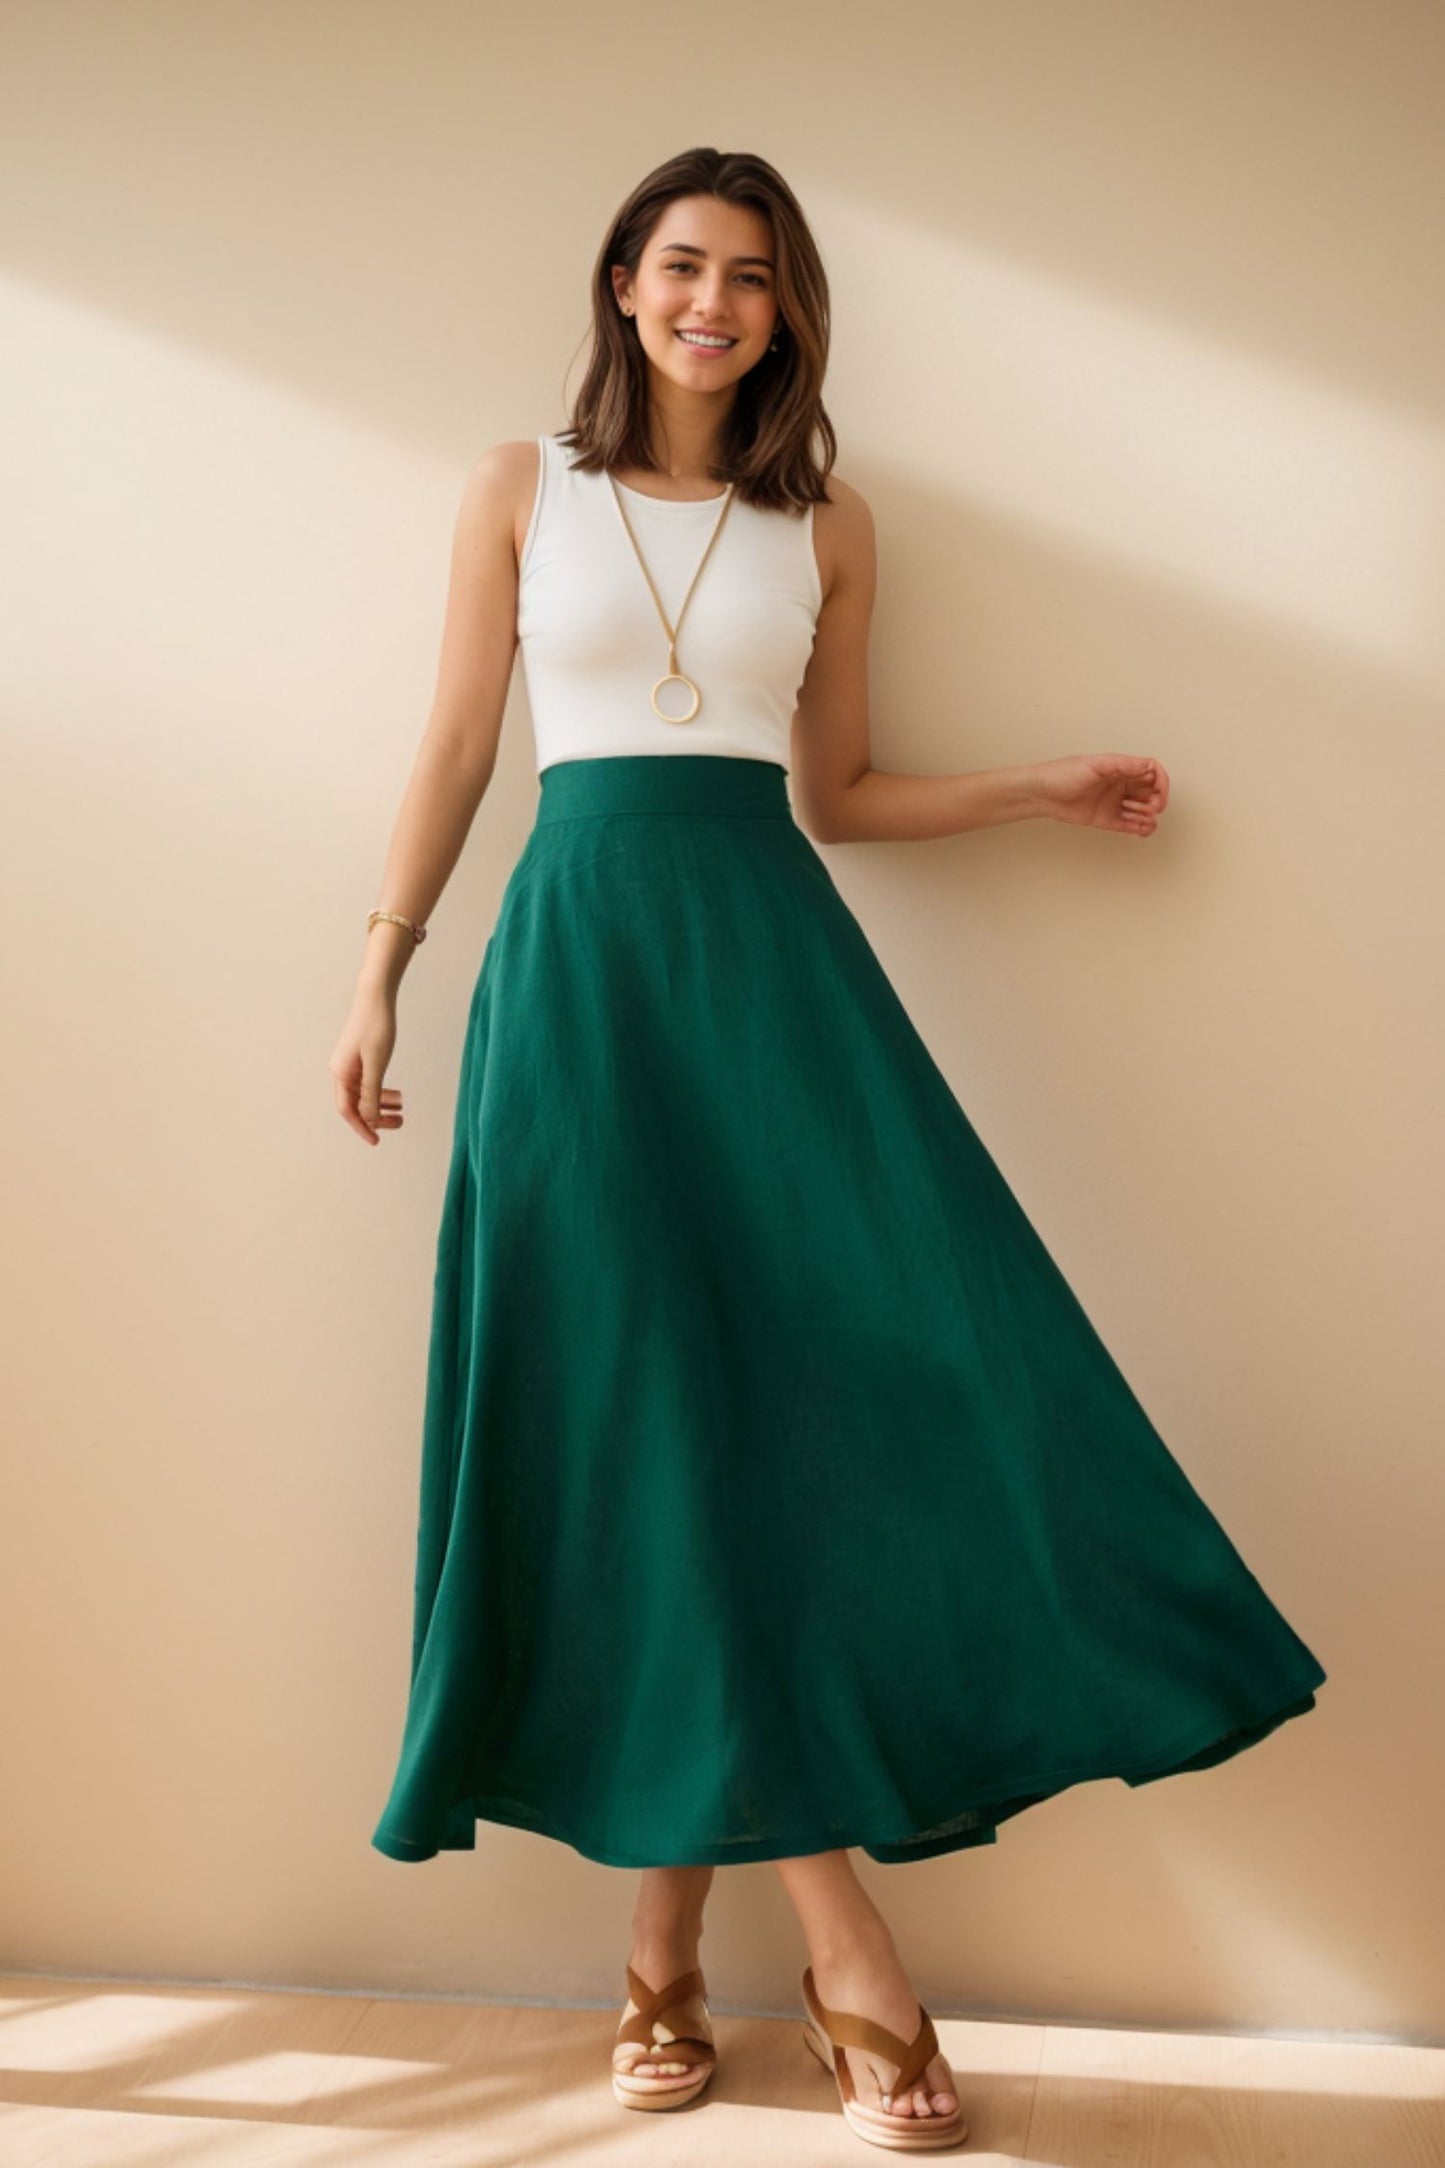 Green Linen Maxi Skirt with pockets 4977